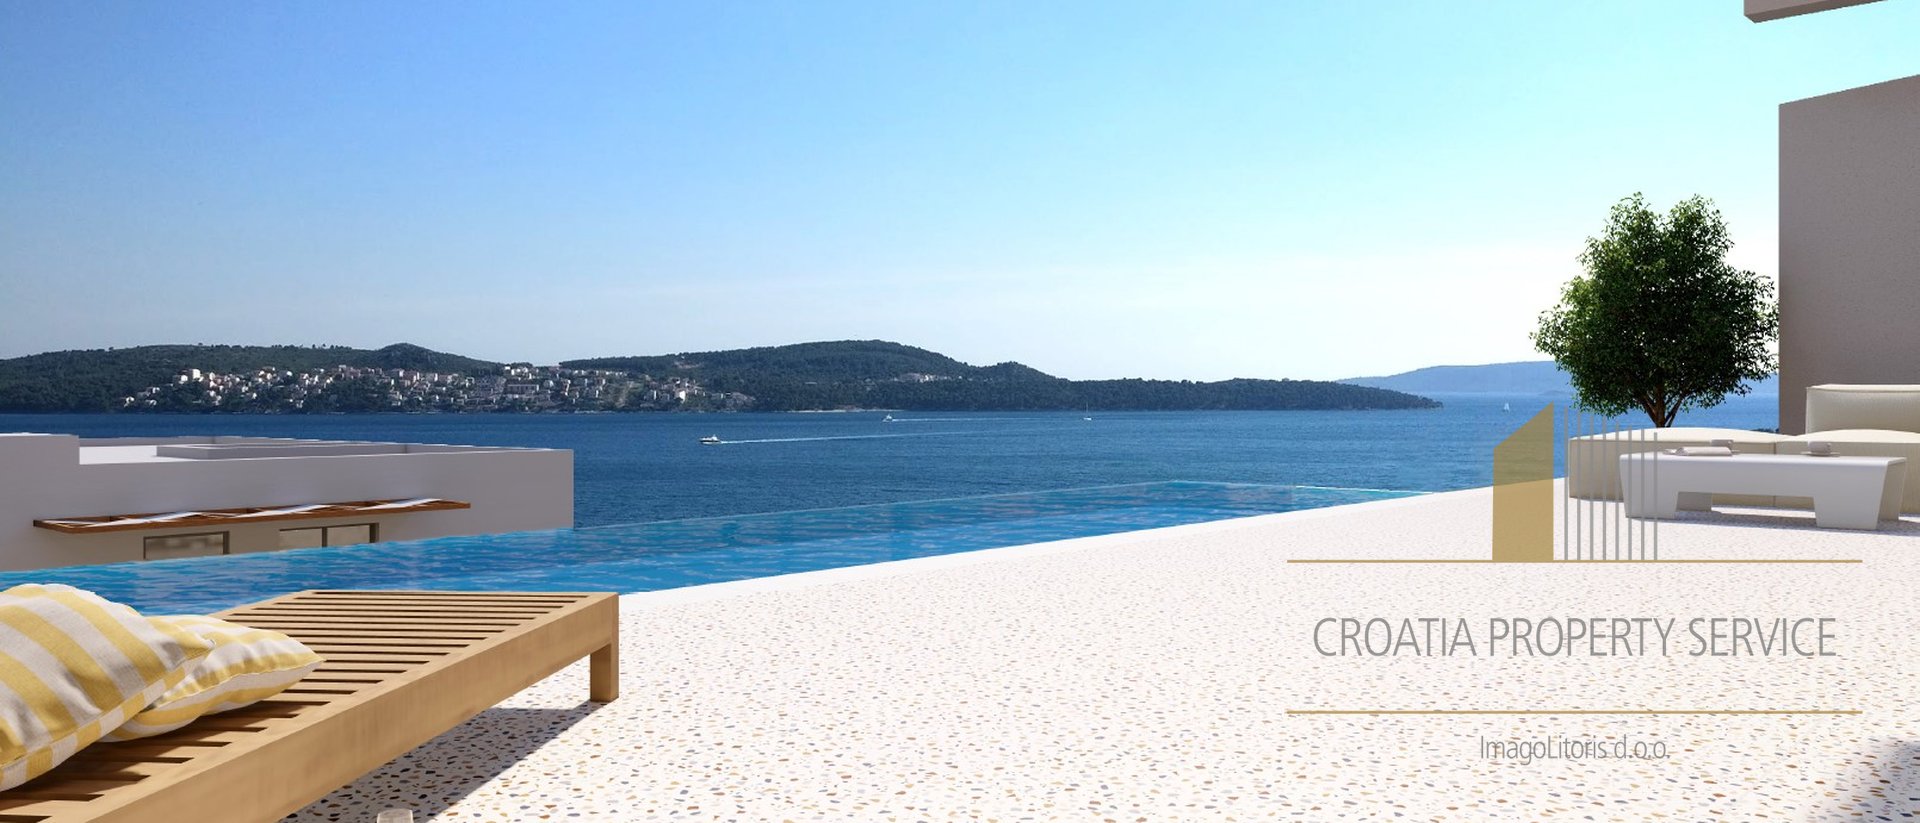 Otkrijte oazu mira i luksuza u srcu Trogira - raskošnu modernu vilu s prekrasnim pogledom na more.